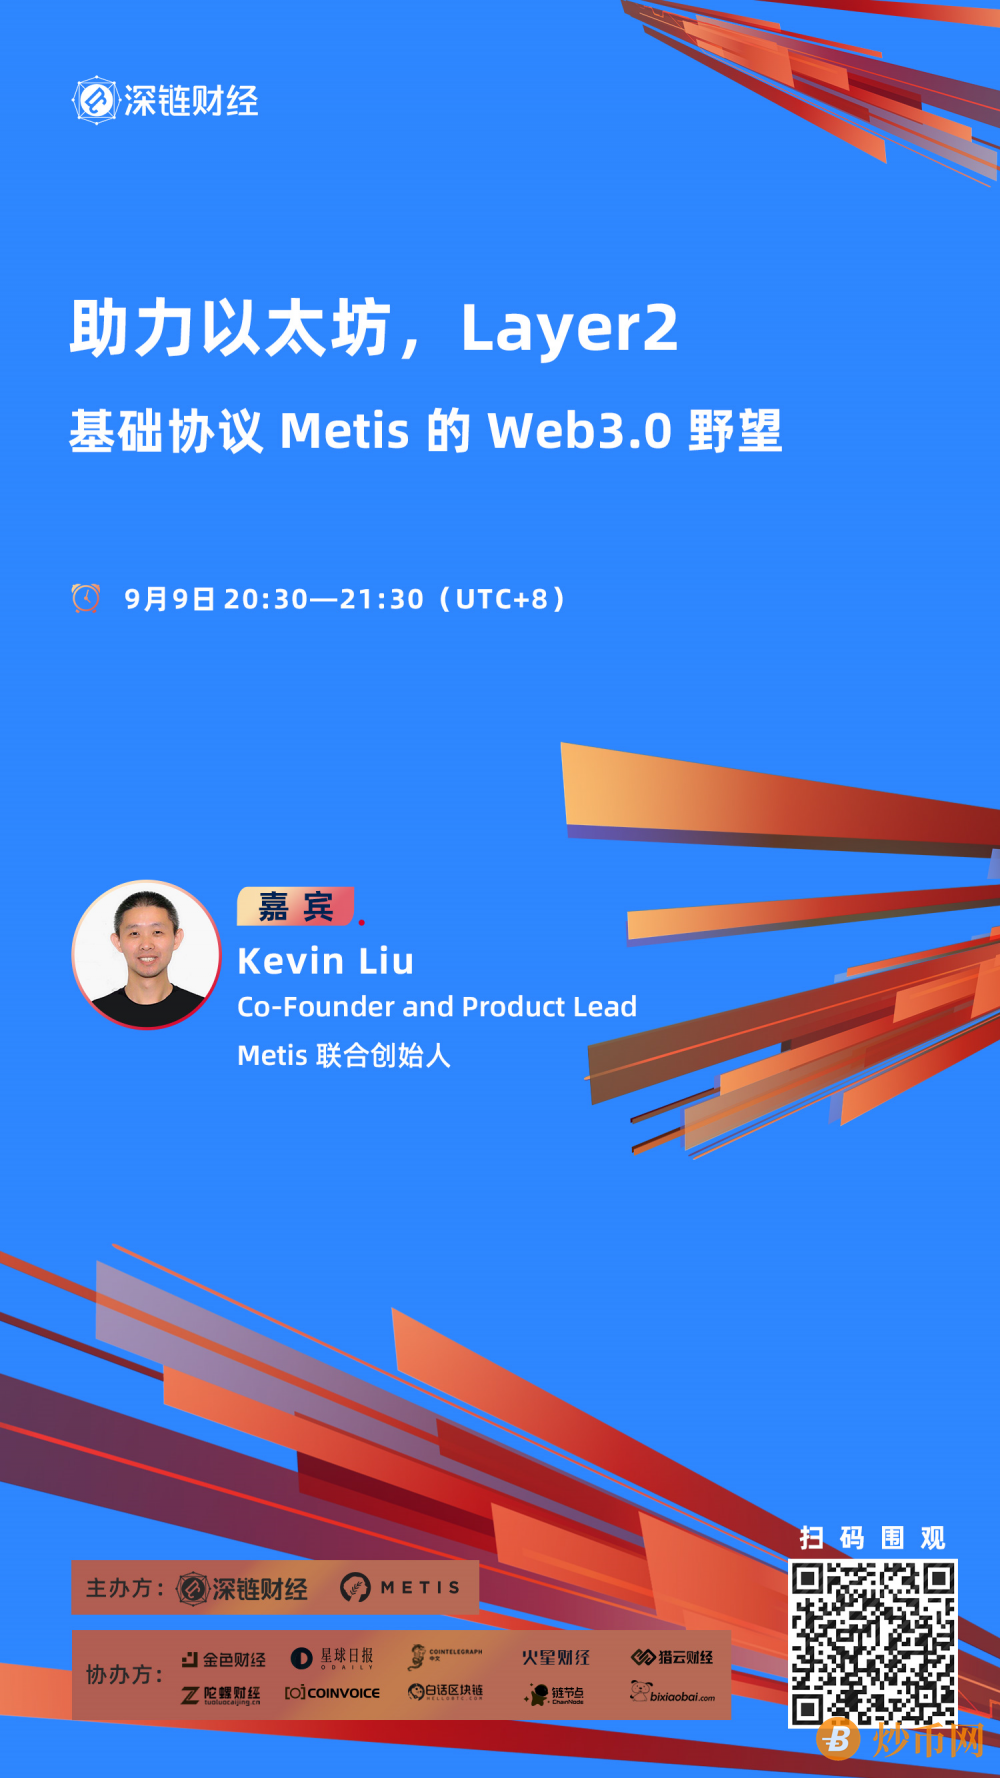 助力以太坊，Layer 2基础协议Metis的Web 3.0野望